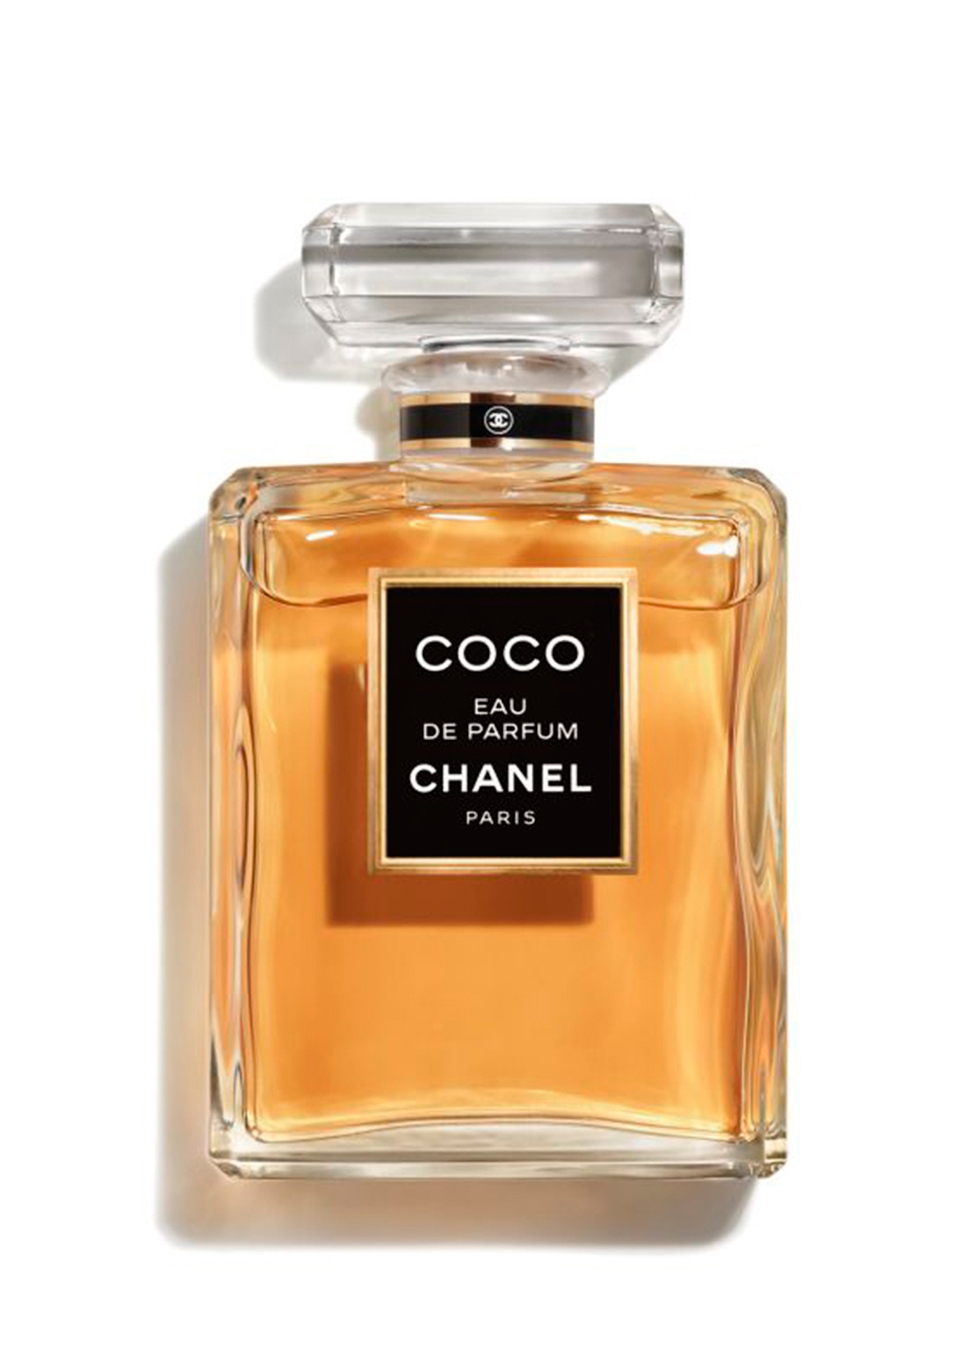 CHANEL COCO~Eau De Parfum Spray 50ml - Harvey Nichols